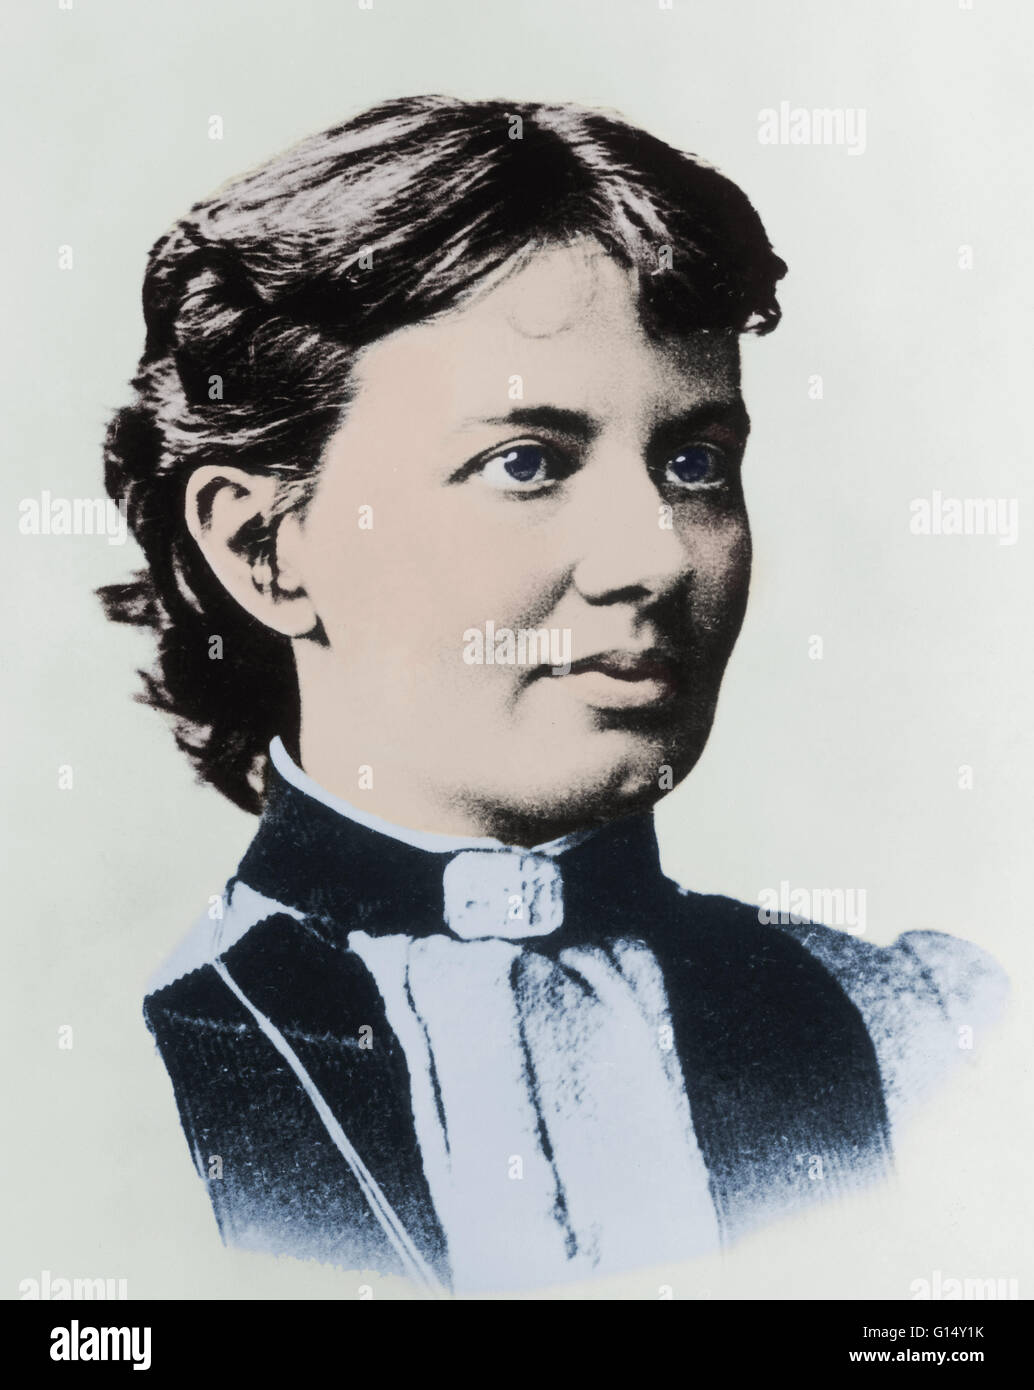 Sofia Vasilyevna Kovalevskaya (1850-1891), die erste große russische Mathematikerin, und auch die erste Frau ernannt, eine volle Professur in Europa im Jahre 1889. Trotz der Haltung der Zeit gegenüber akademischen Arbeit von Frauen sammelte sie Respekt vor Stockfoto